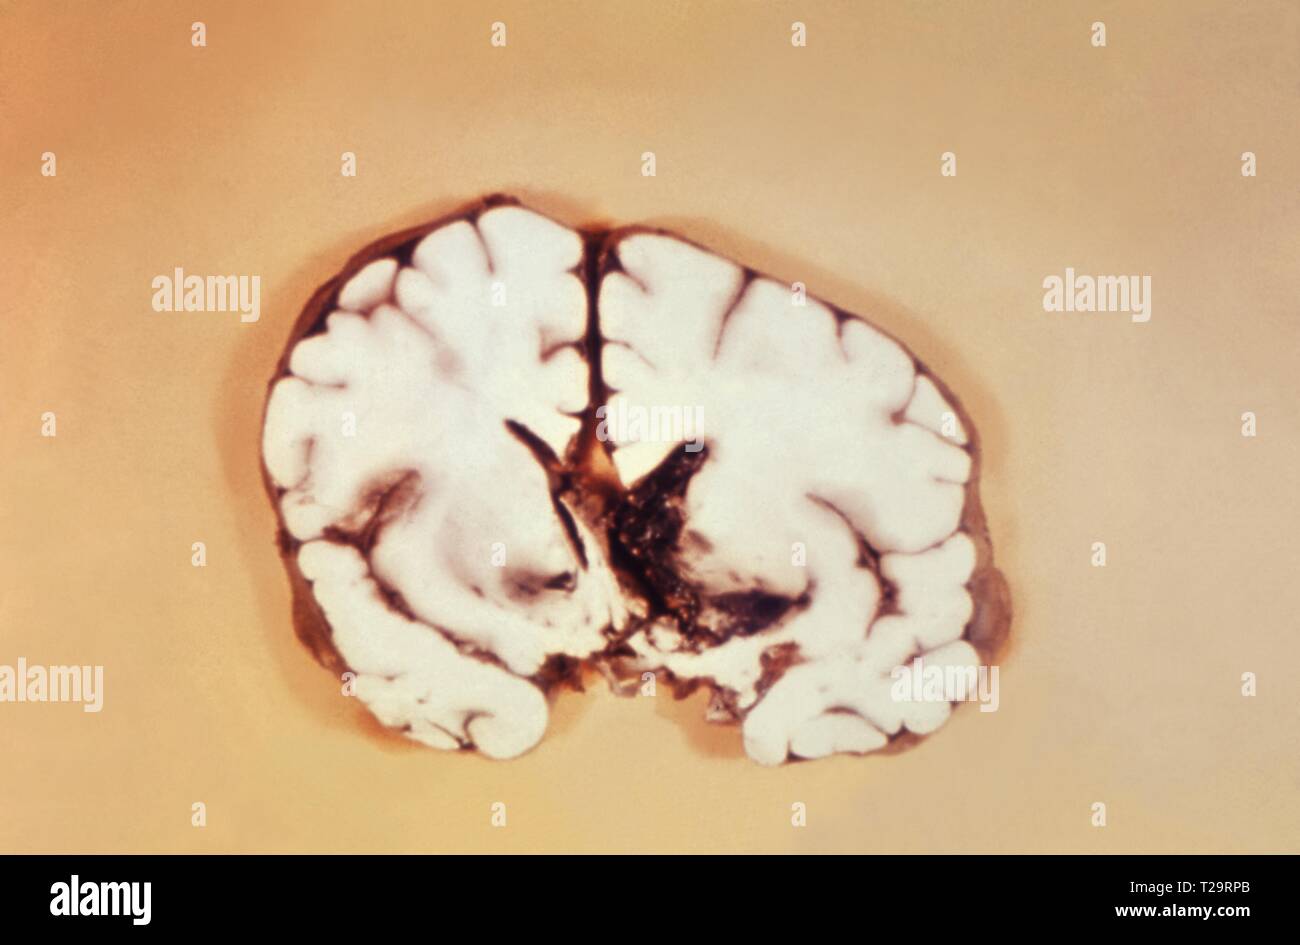 Nahaufnahme der Gehirnhälfte mit Interventrikuläre Blutung durch Milzbrand Meningitis, 1966 verursacht. Bild mit freundlicher Genehmigung Zentren für Krankheitskontrolle und Prävention (CDC). () Stockfoto